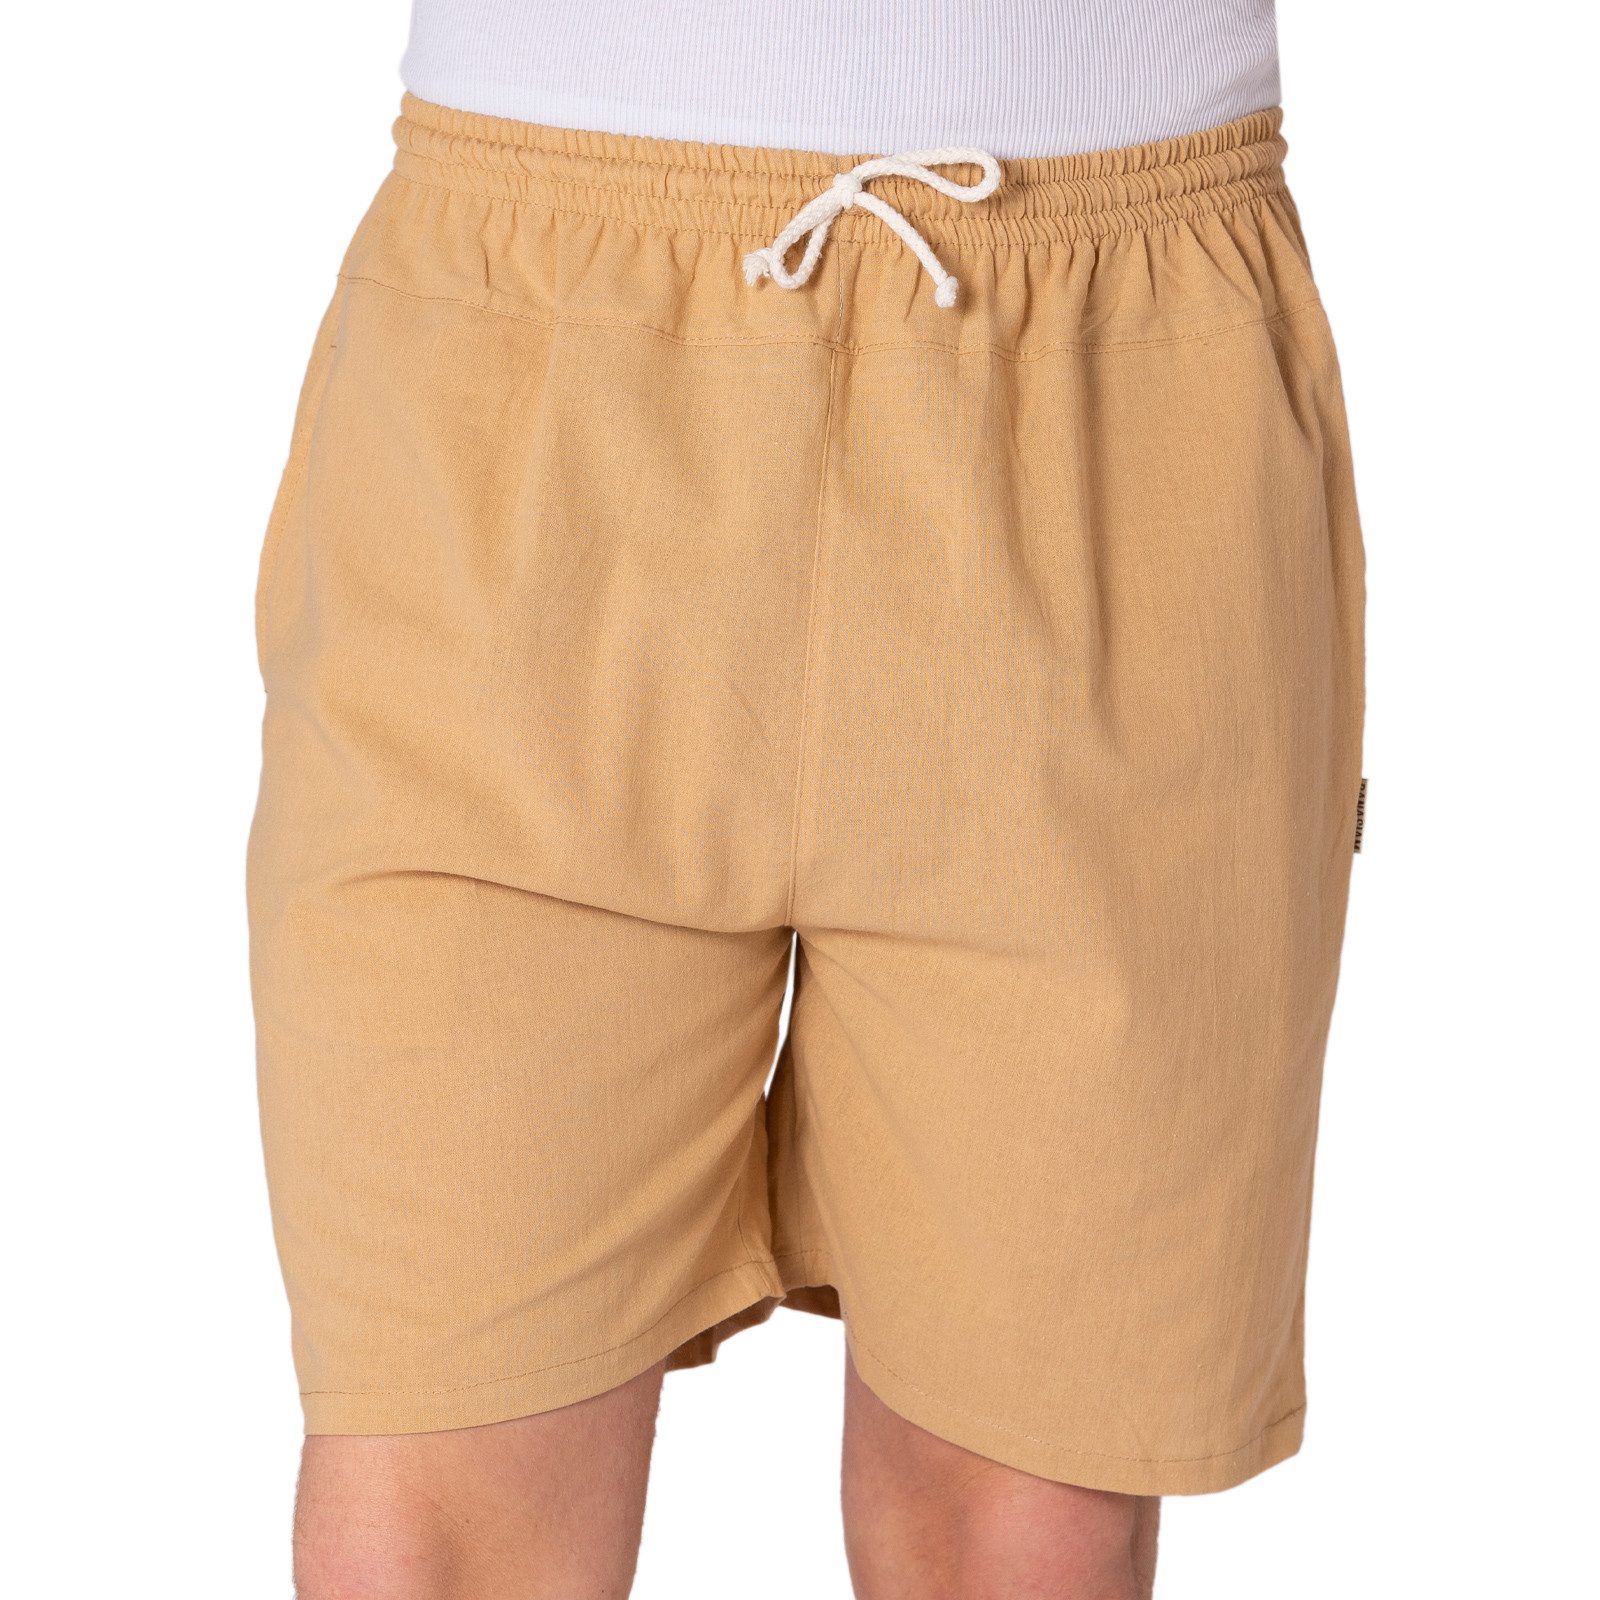 PANASIAM Strandshorts kurze Hose aus 100% Baumwolle Basic Stoffhose mit Taschen & Gummibund Sommerhose Sweatshorts Casual Loungewear Wellnesshose Strandshorts